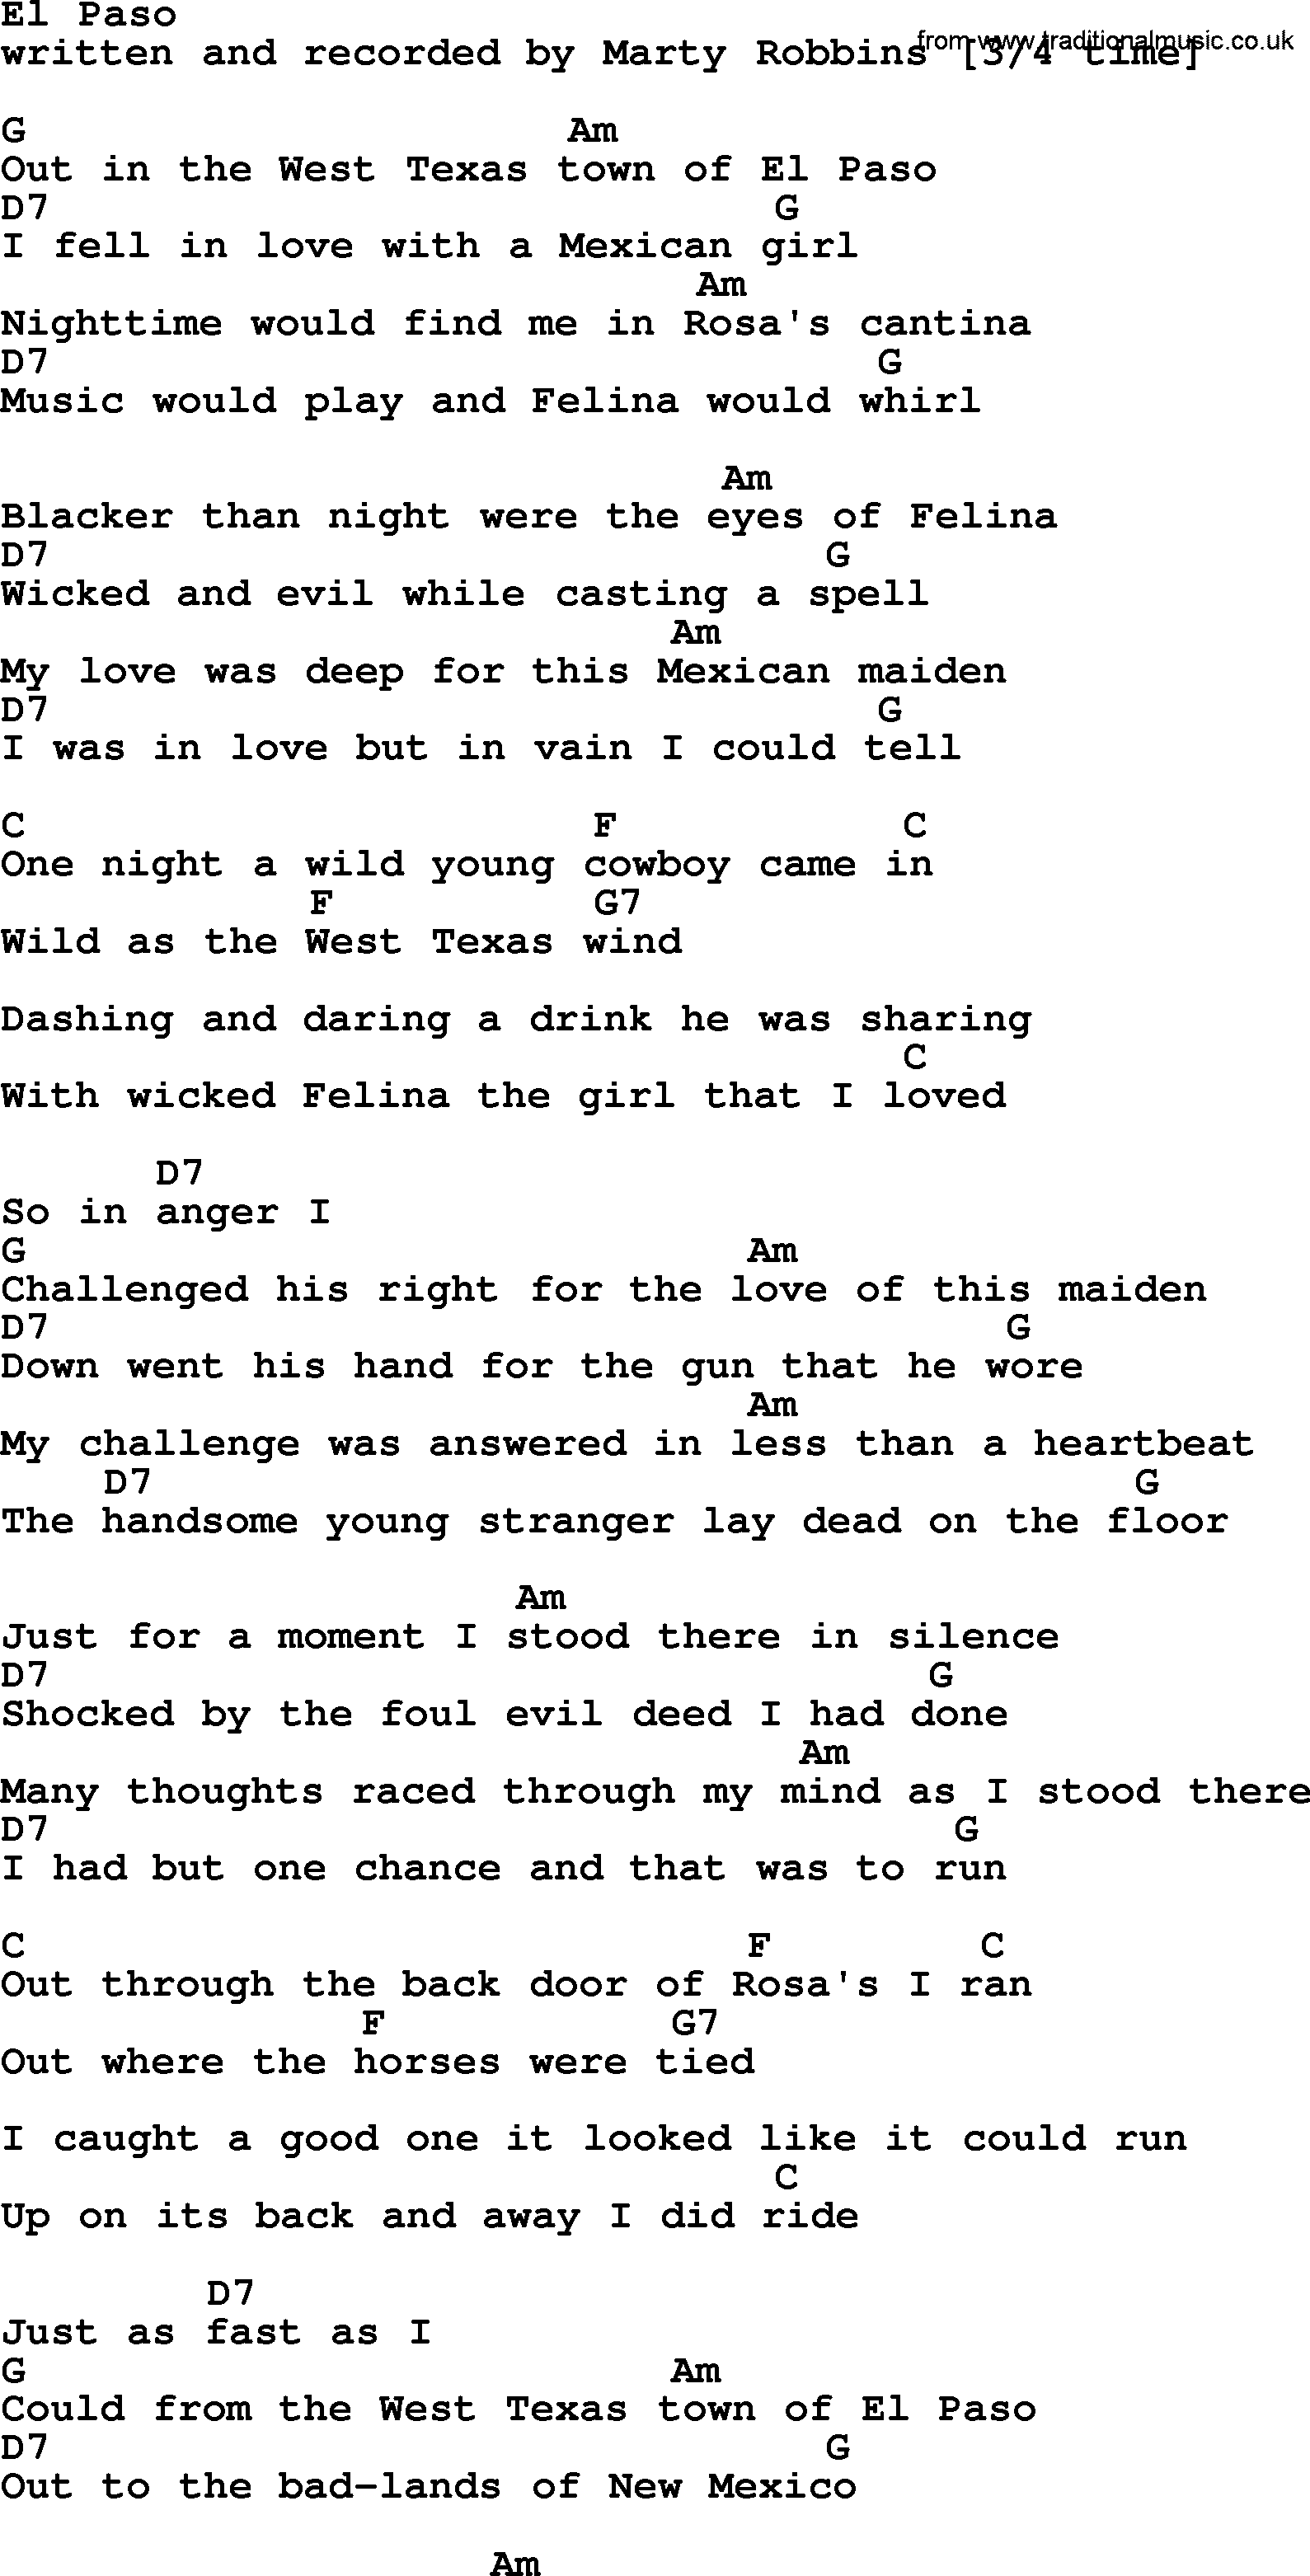 Marty Robbins song: El Paso, lyrics and chords